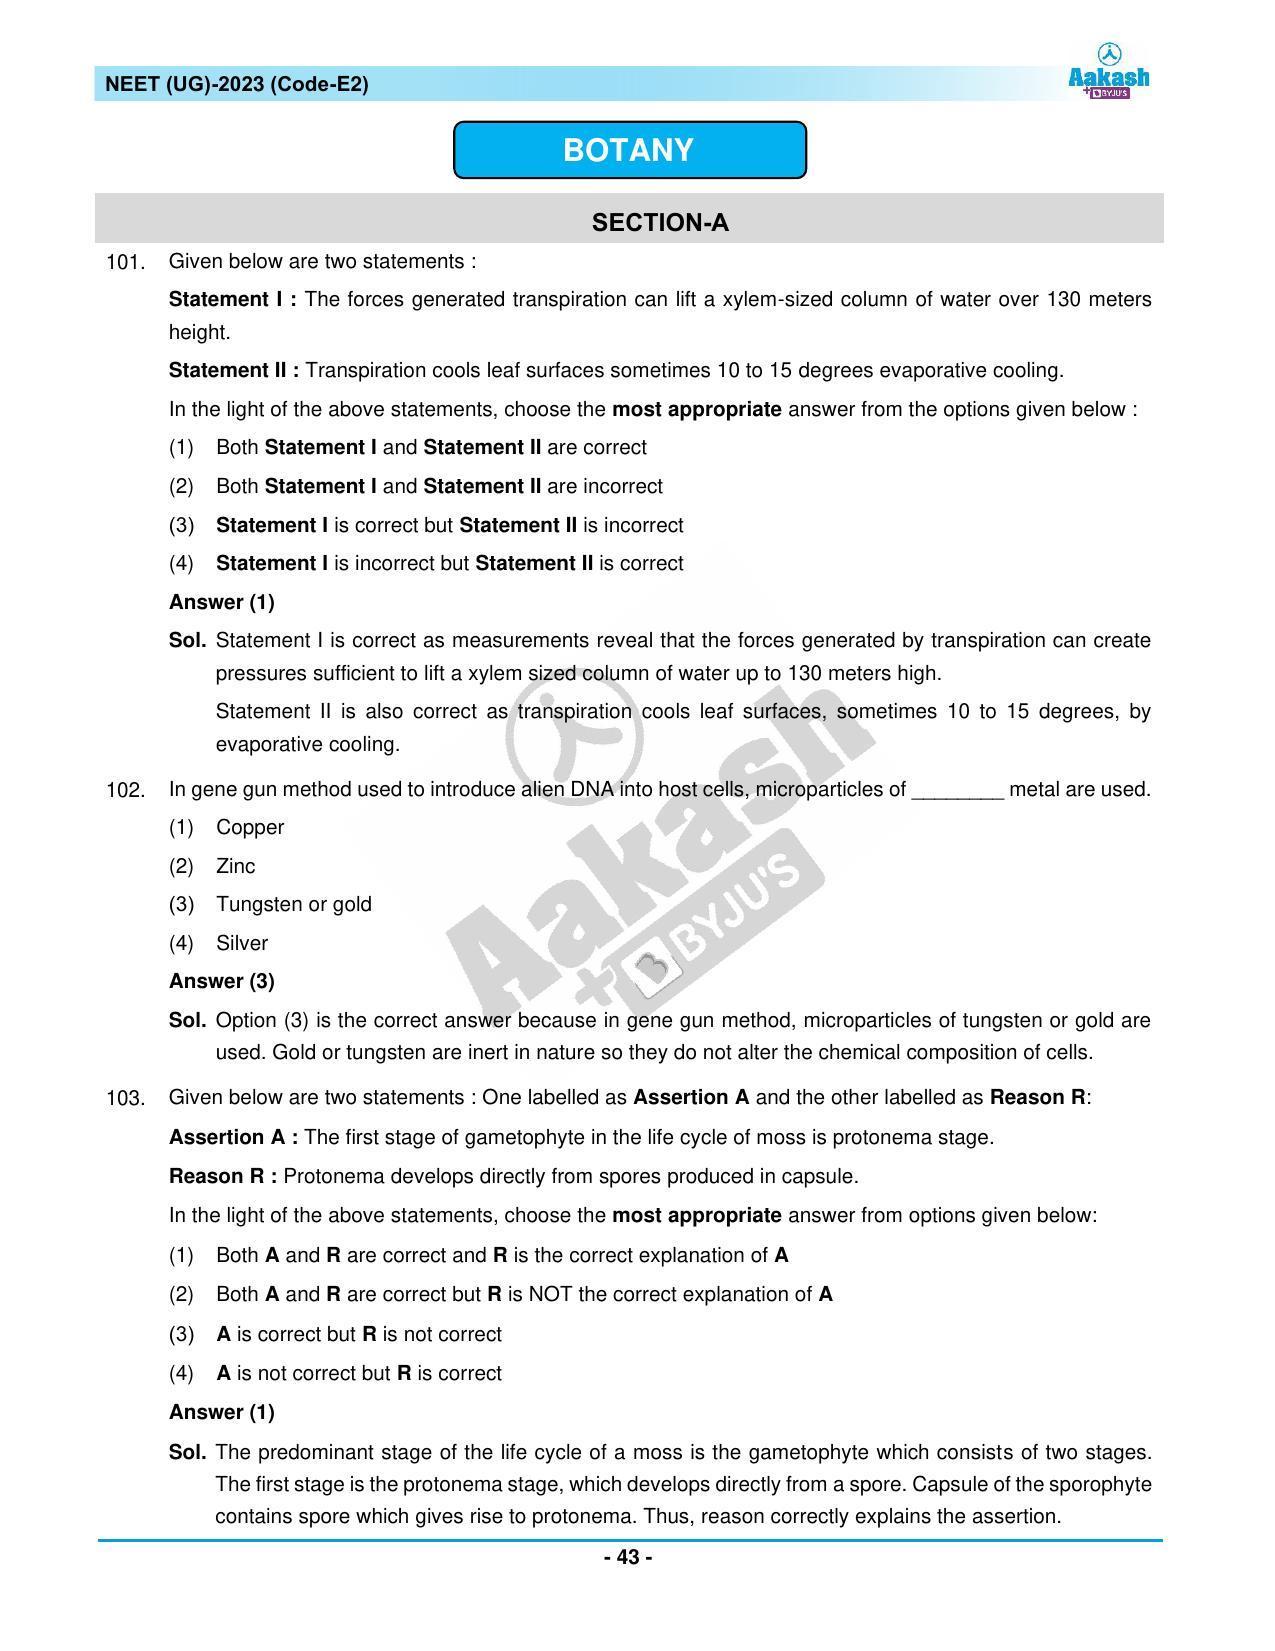 NEET 2023 Question Paper E2 - Page 43